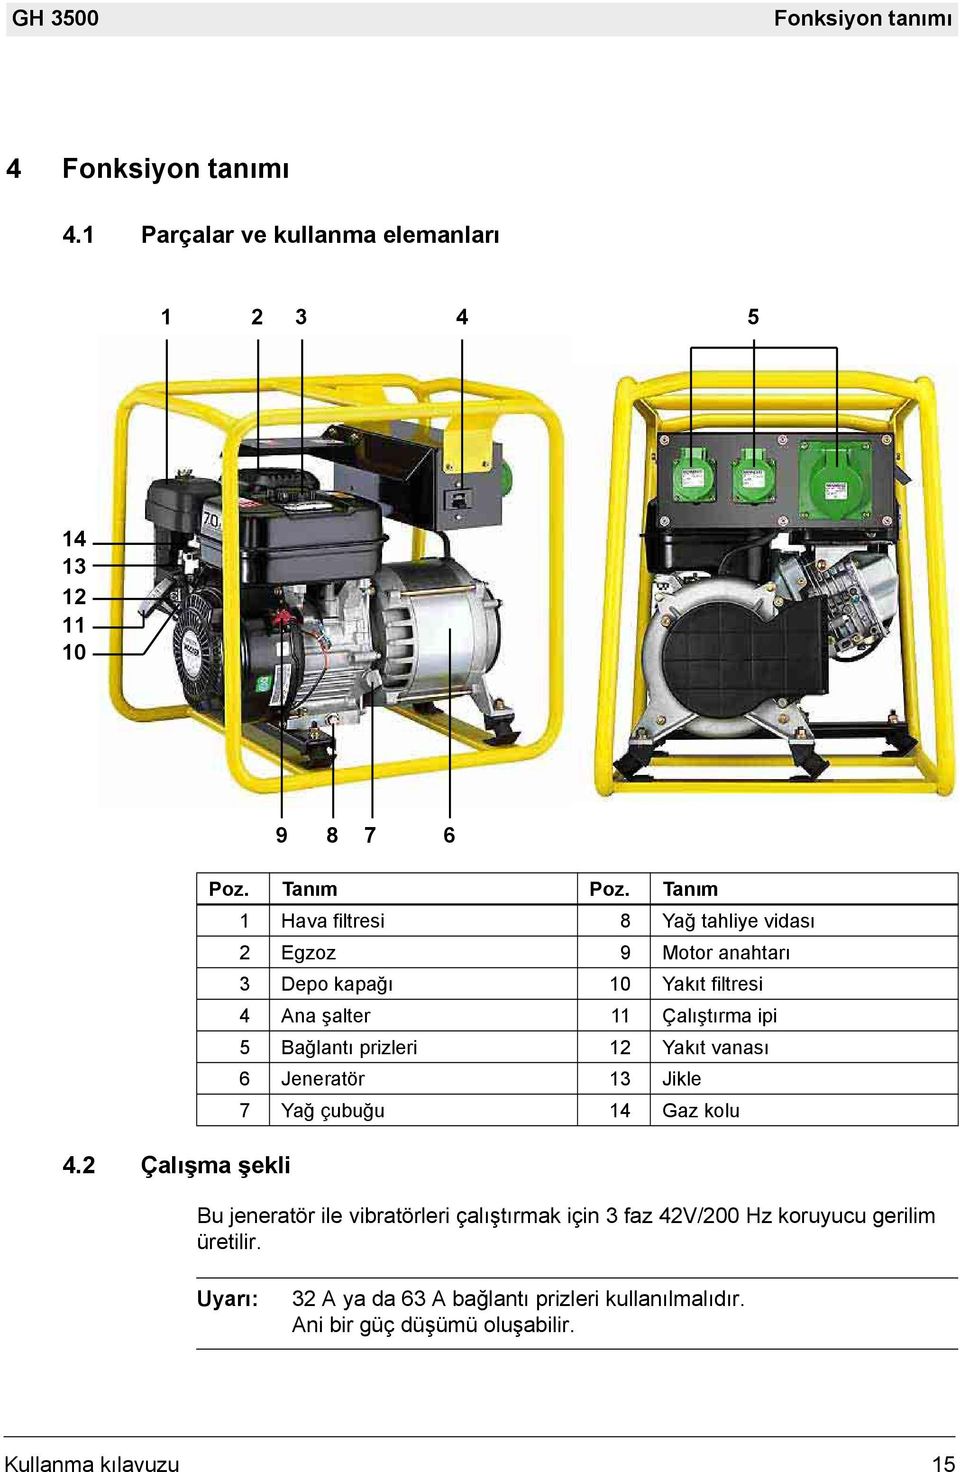 Tanım 1 Hava filtresi 8 Yağ tahliye vidası 2 Egzoz 9 Motor anahtarı 3 Depo kapağı 10 Yakıt filtresi 4 Ana şalter 11 Çalıştırma ipi 5